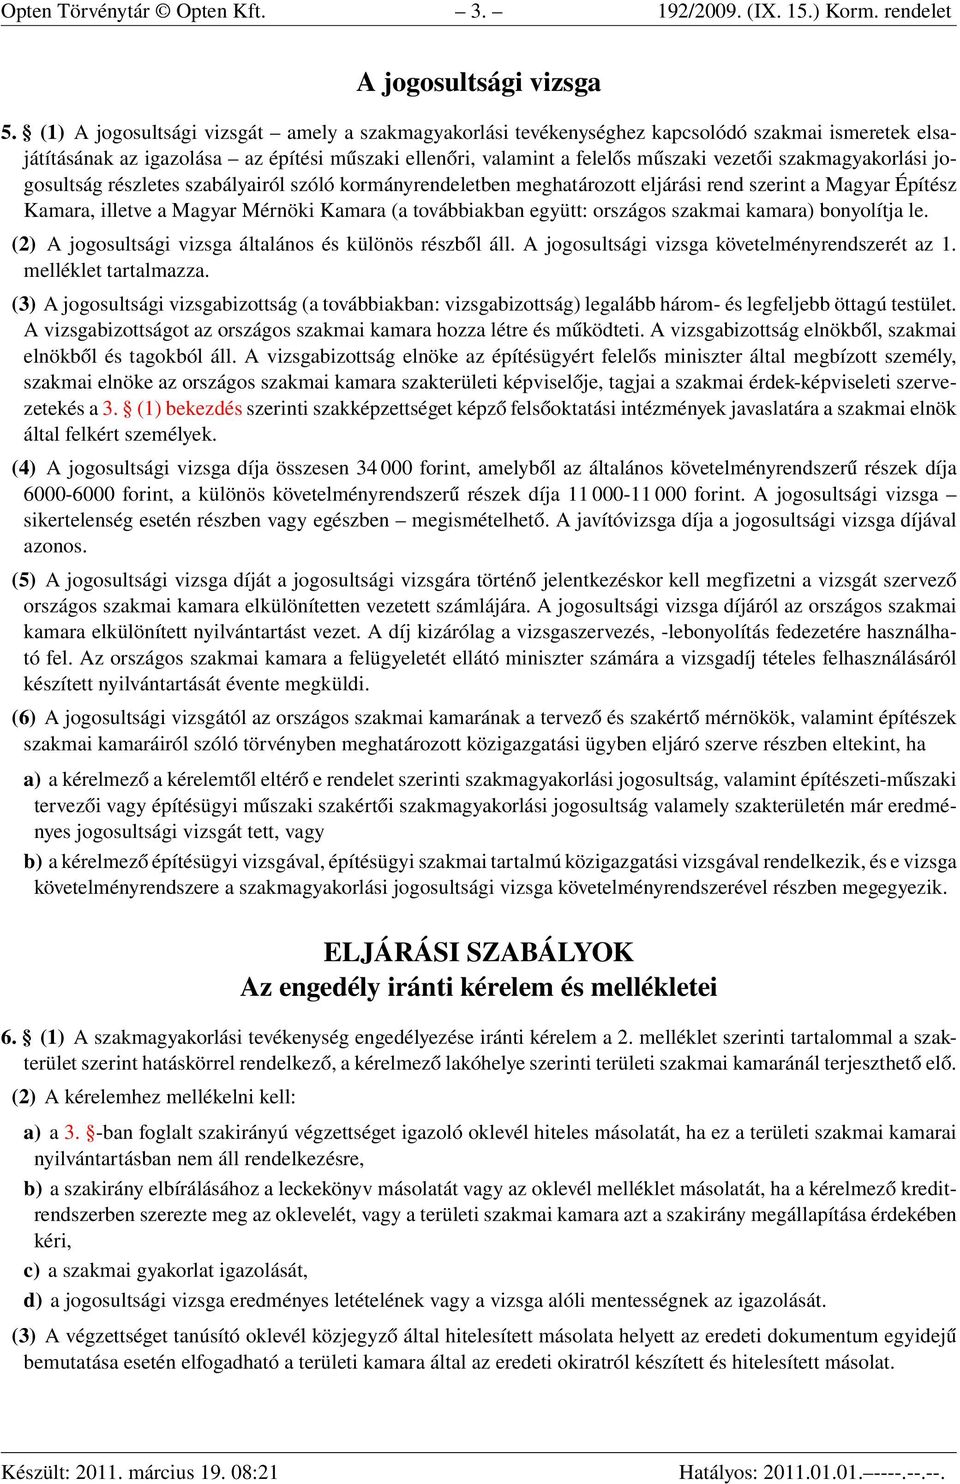 szakmagyakorlási jogosultság részletes szabályairól szóló kormányrendeletben meghatározott eljárási rend szerint a Magyar Építész Kamara, illetve a Magyar Mérnöki Kamara (a továbbiakban együtt: